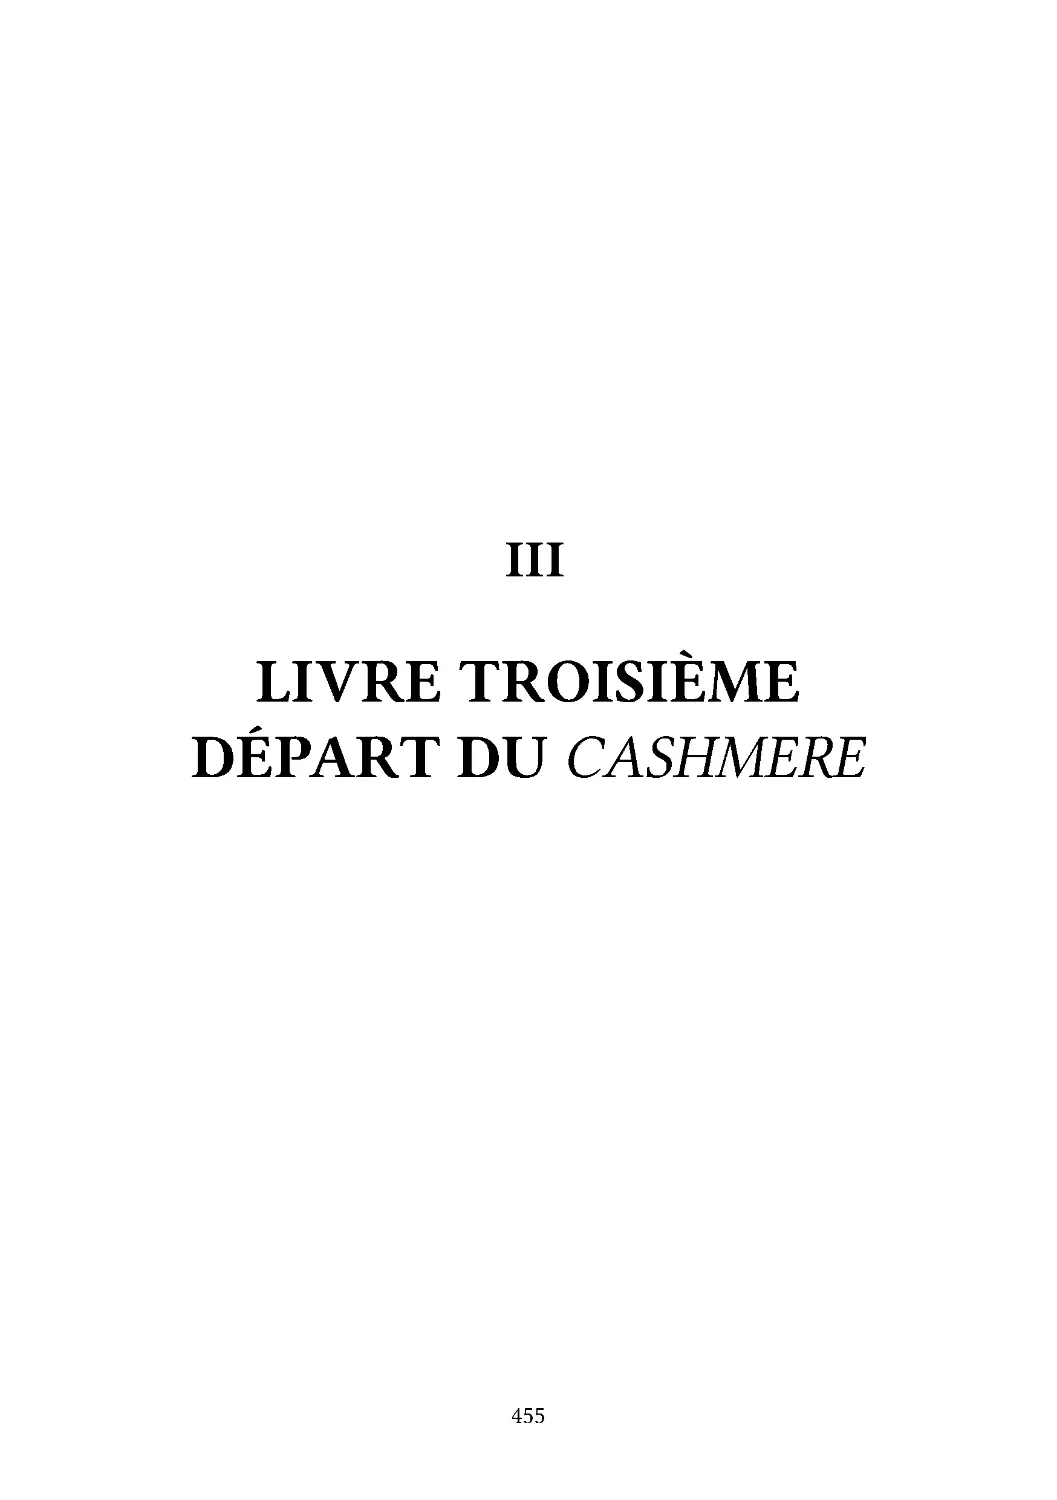 III LIVRE TROISIÈMEDÉPART DU CASHMERE